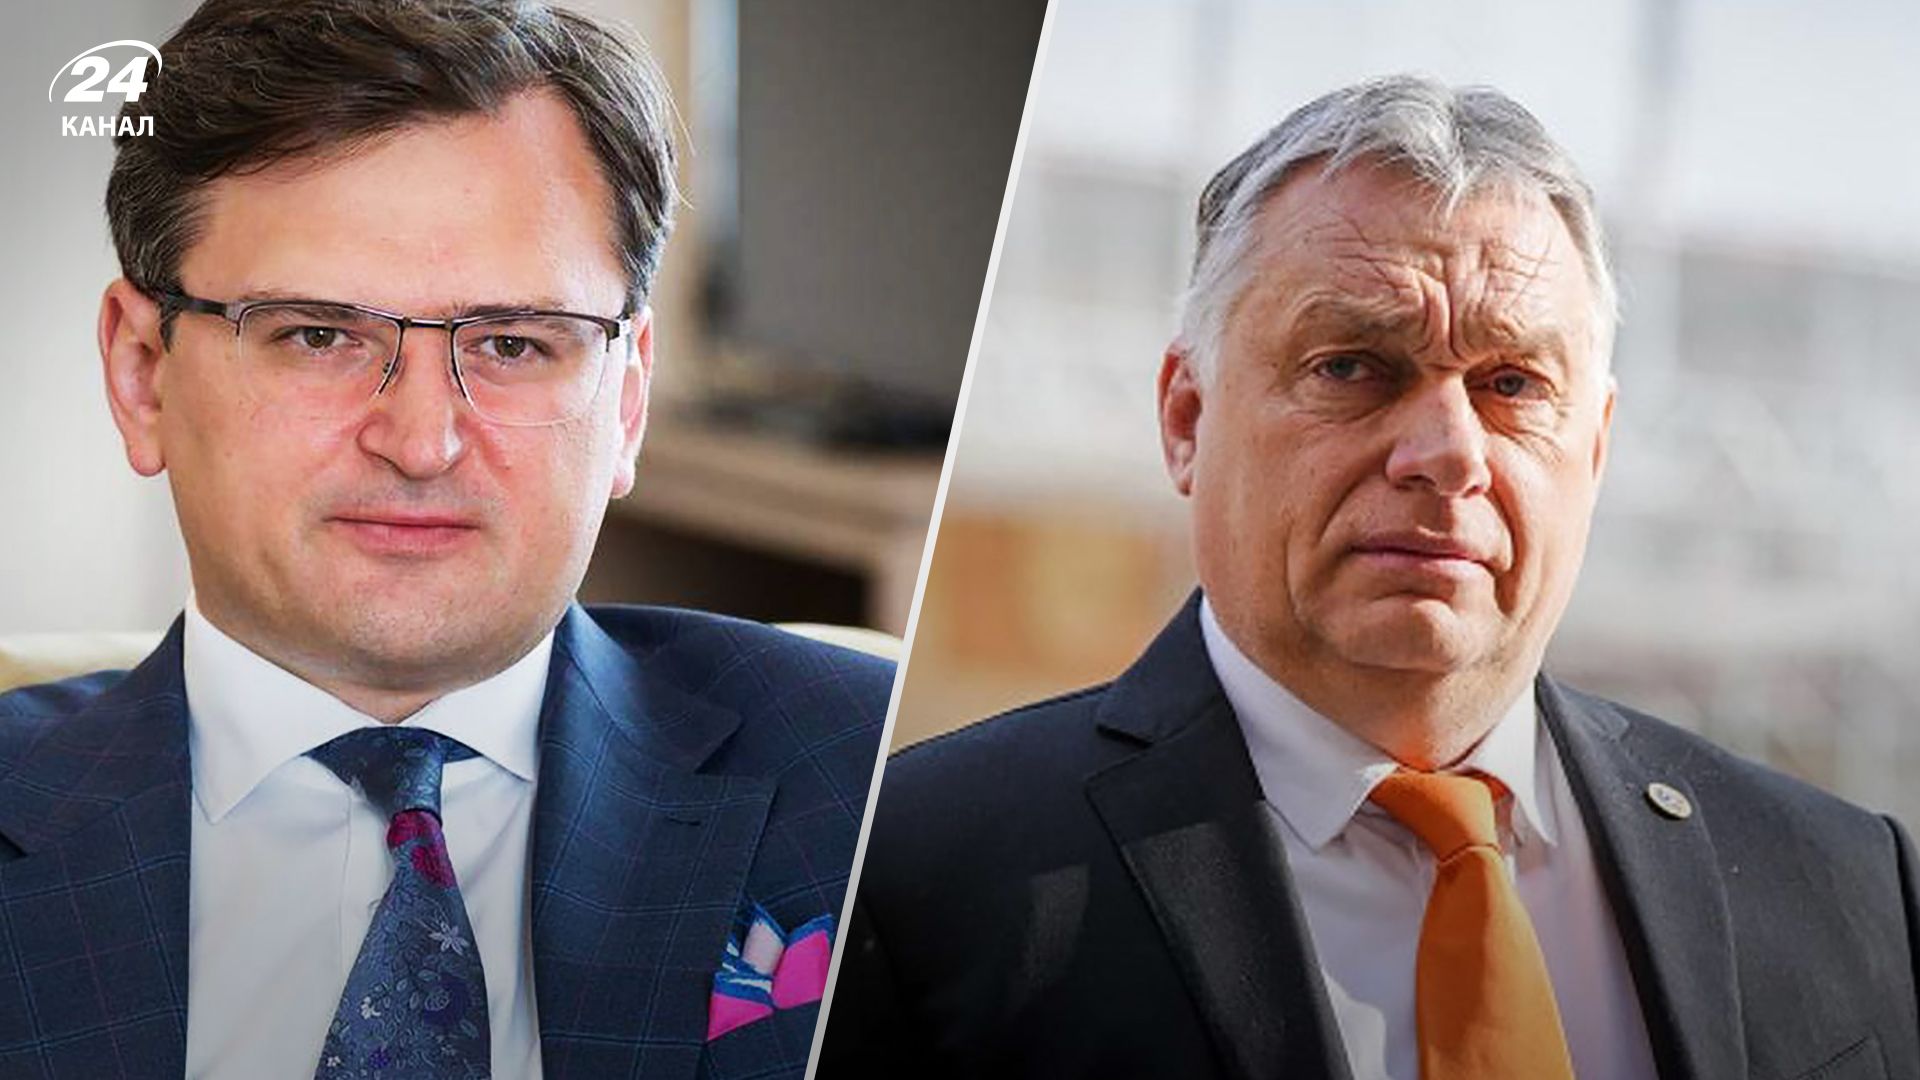 Скандалы с Виктором Орбаном – Дмитрий Кулеба заявил, что Орбан ведет свою игру с ЕС